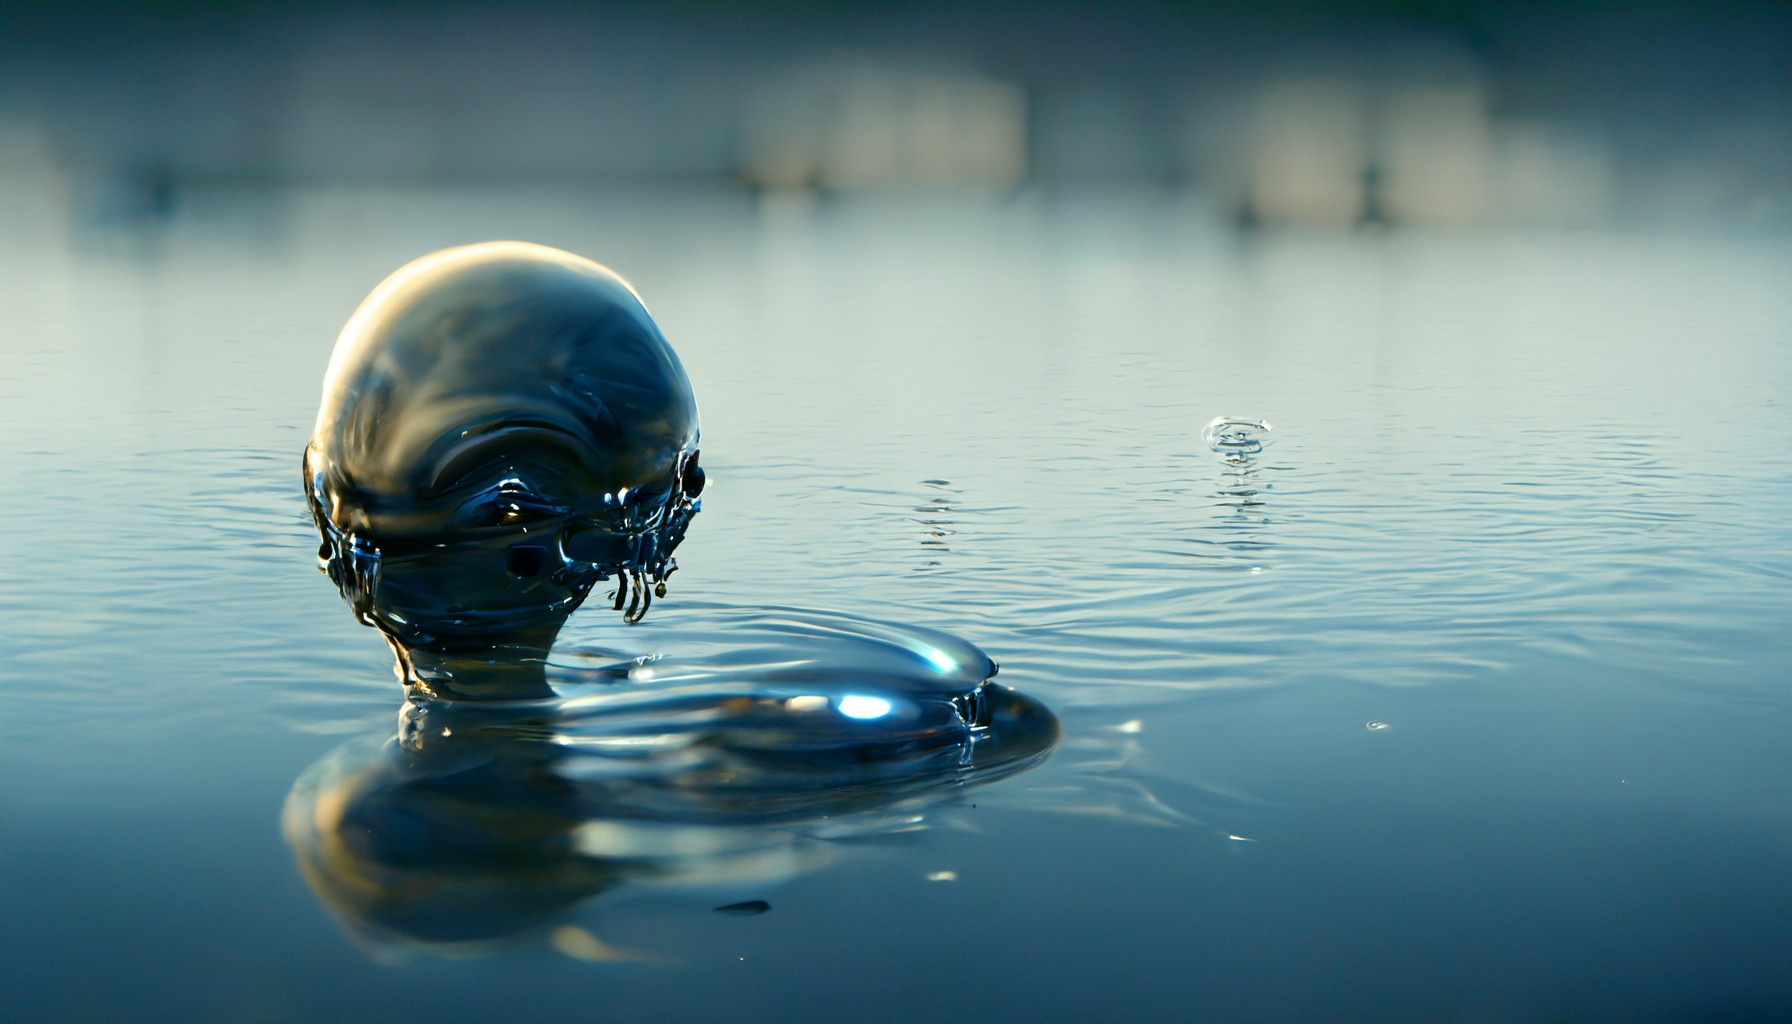 Alien in the Water